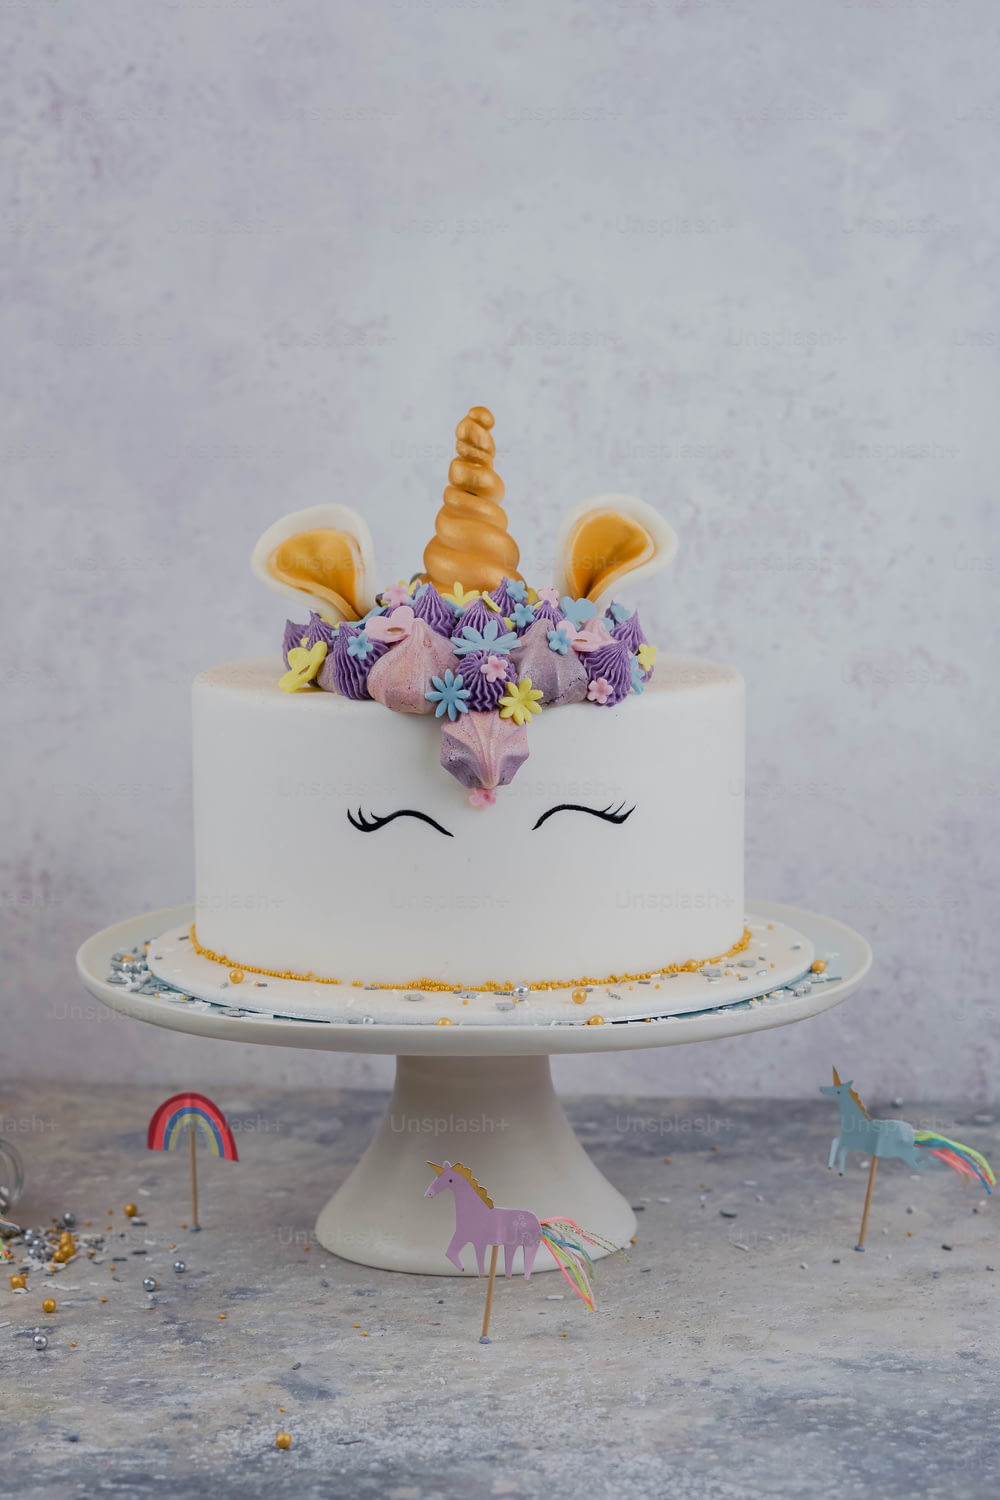 Un pastel blanco con una cara de unicornio encima.